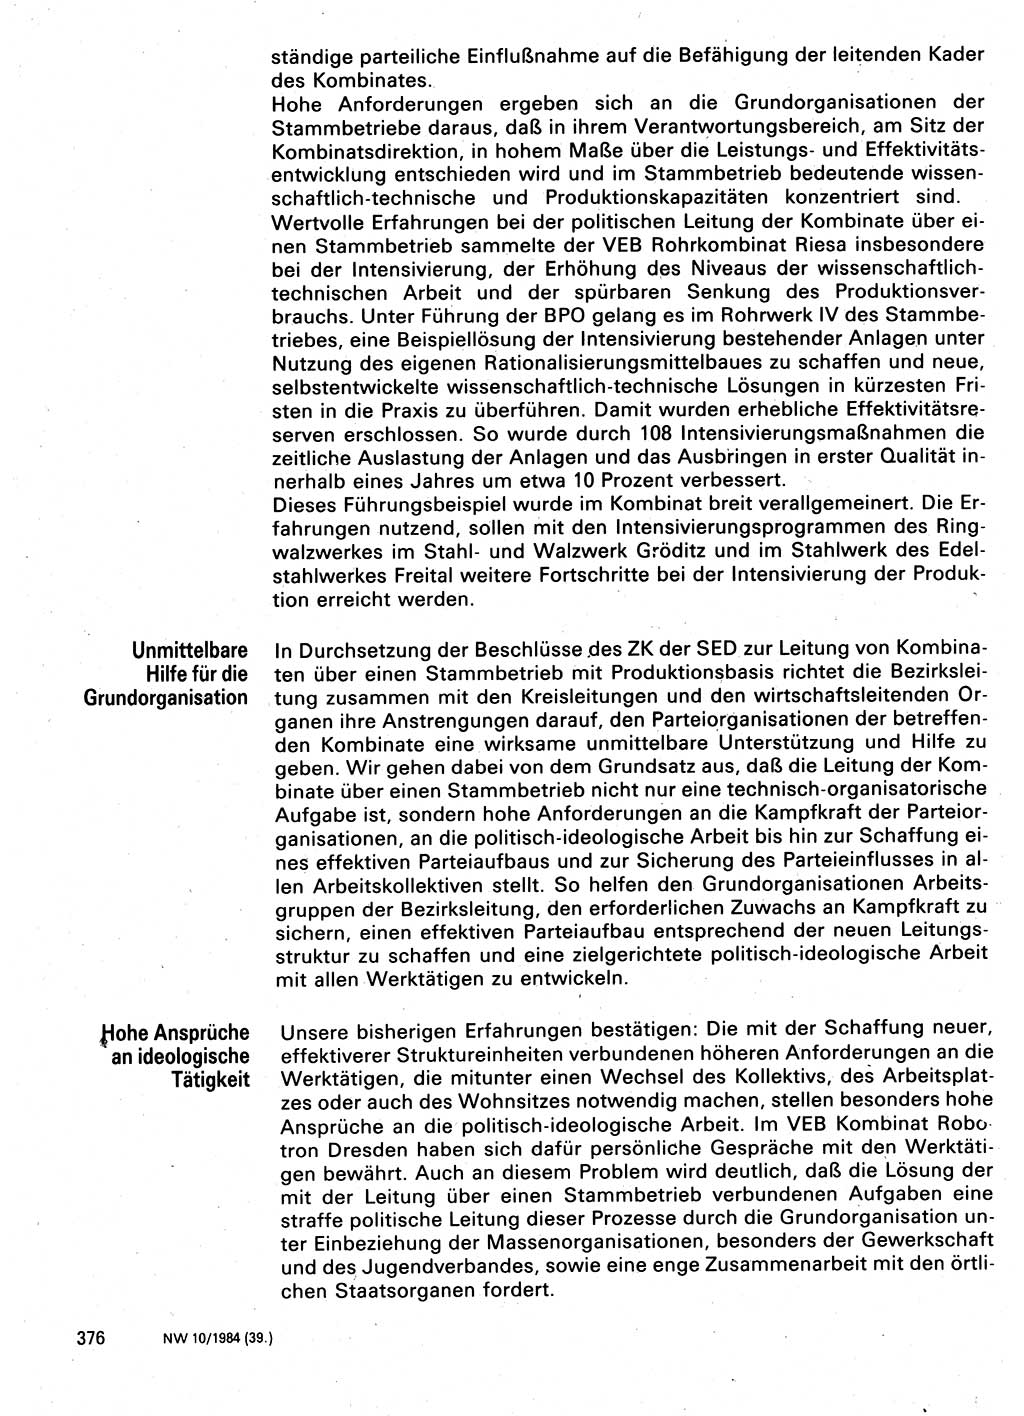 Neuer Weg (NW), Organ des Zentralkomitees (ZK) der SED (Sozialistische Einheitspartei Deutschlands) für Fragen des Parteilebens, 39. Jahrgang [Deutsche Demokratische Republik (DDR)] 1984, Seite 376 (NW ZK SED DDR 1984, S. 376)